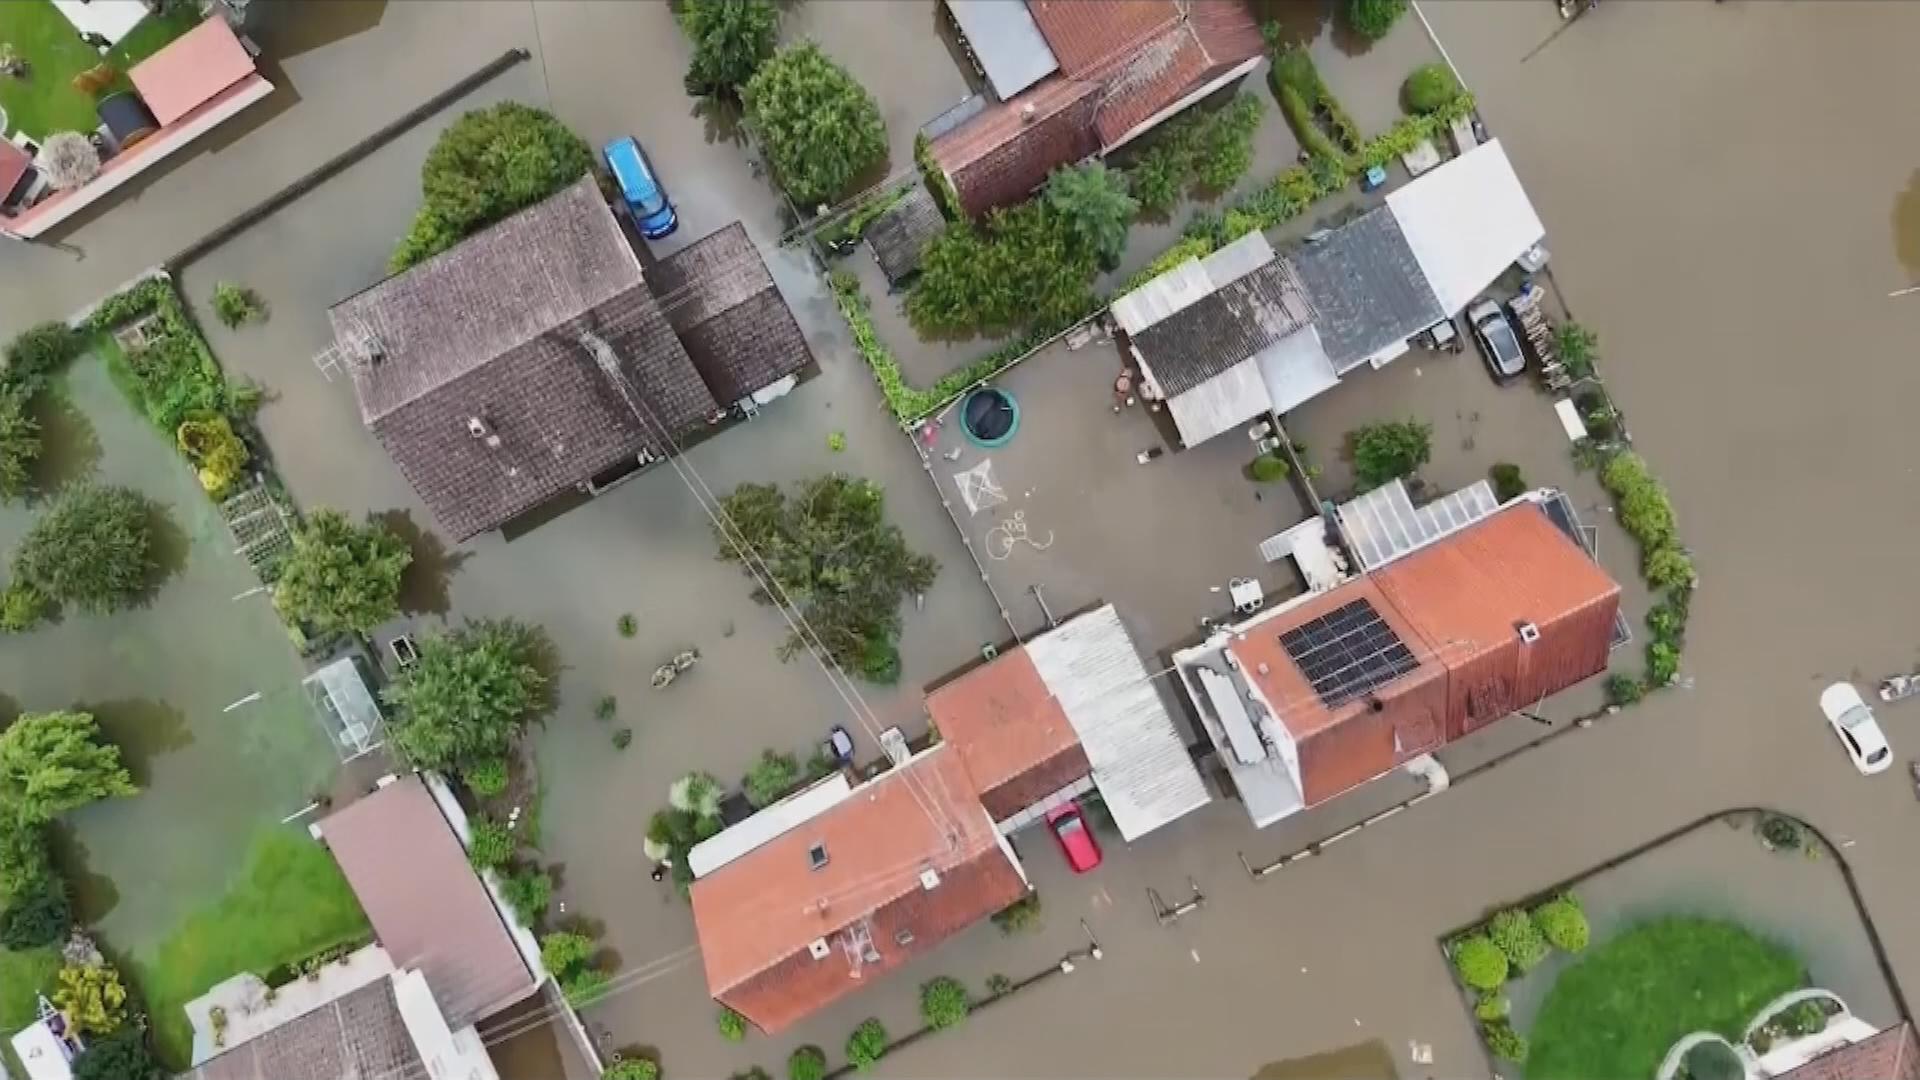 Hochwasser zwischen Häusern